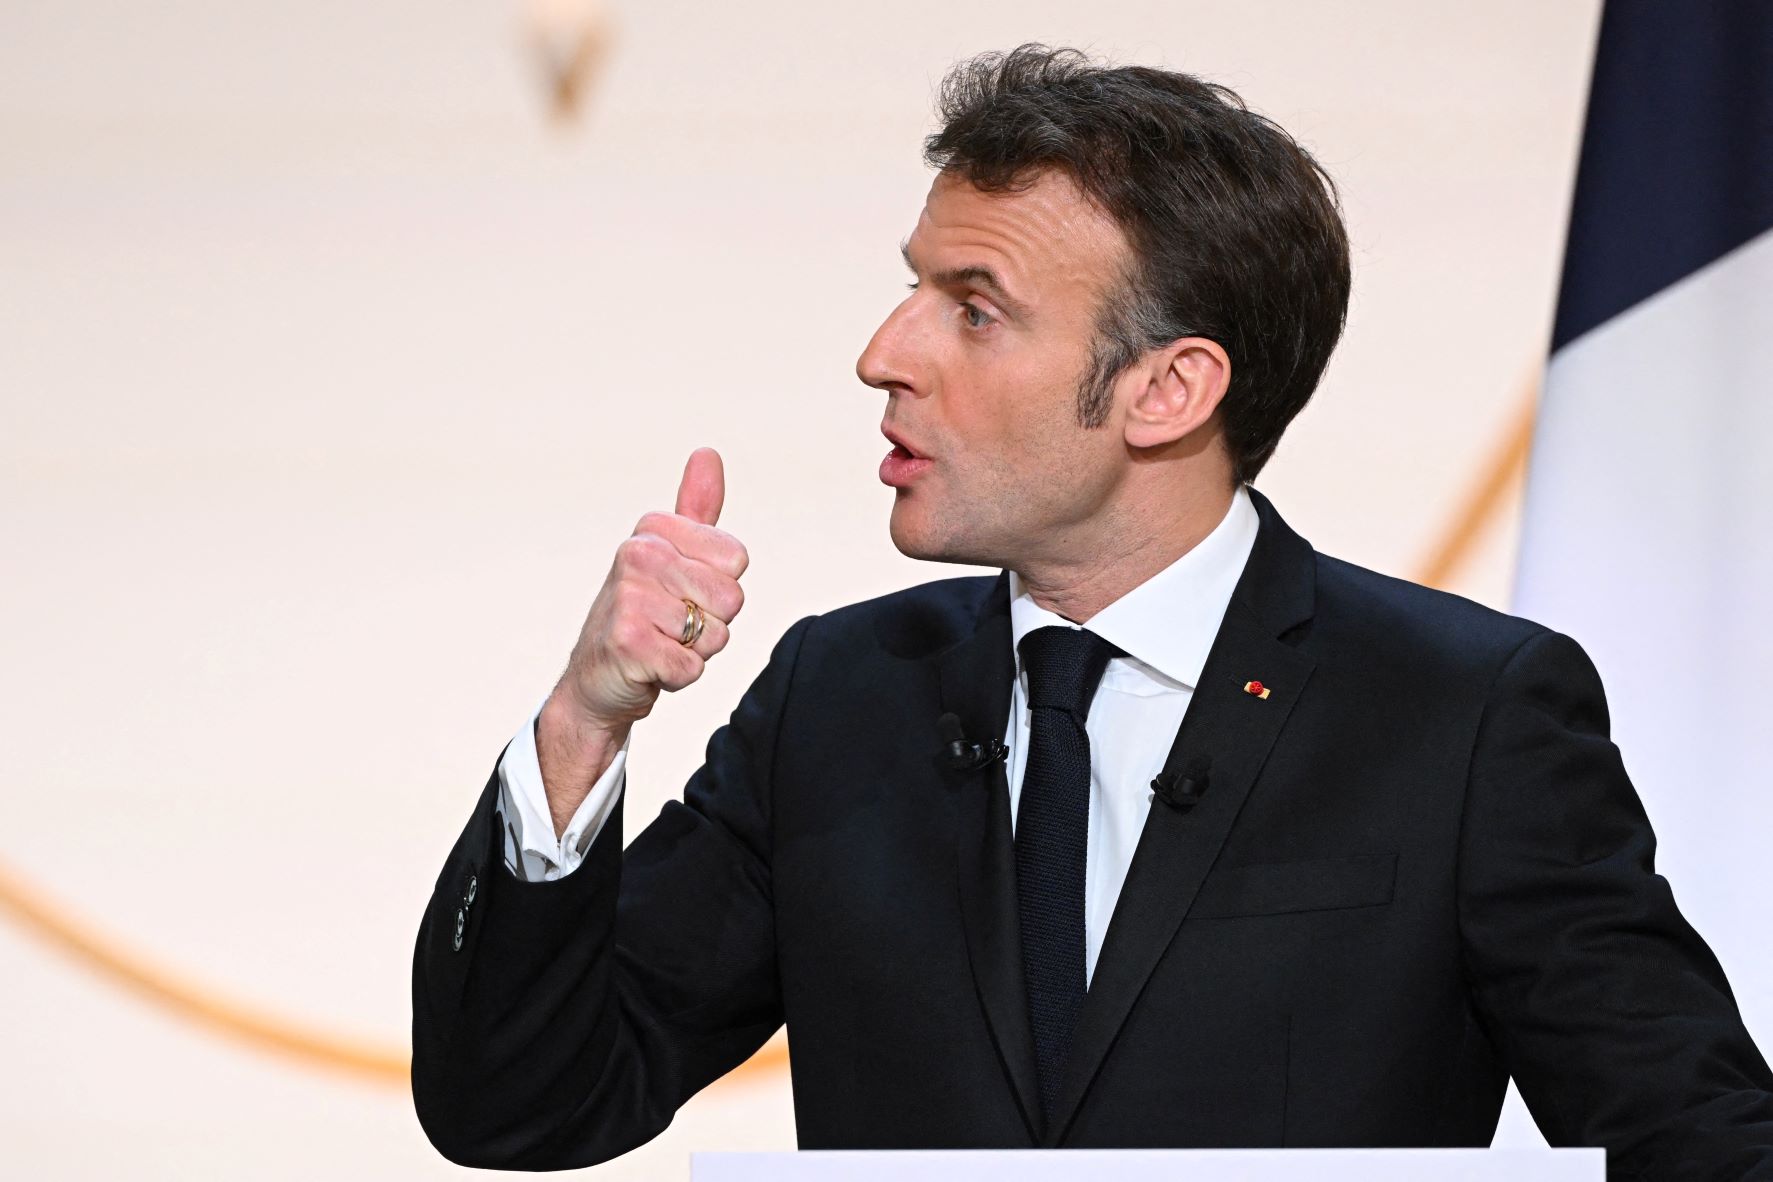 Réforme des retraites : Emmanuel Macron veut « une contribution exceptionnelle » sur « les profits exceptionnels » de certaines entreprises